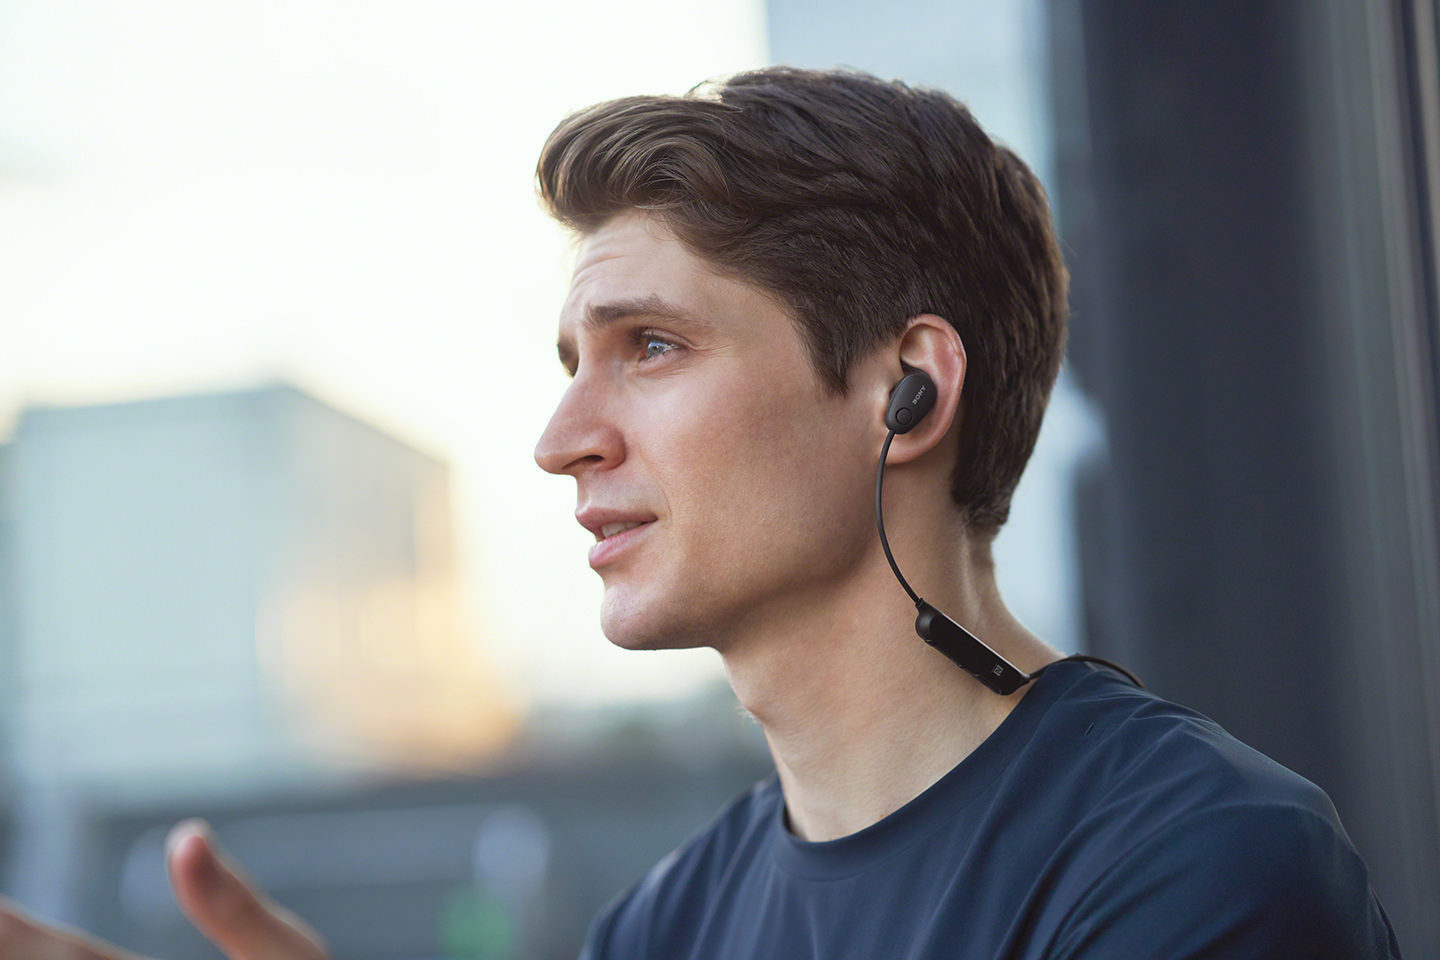 Đánh giá tai nghe thể thao chống ồn SONY WI-SP600N – IDO Audio - Tai nghe chính hãng, tư vấn chuyên nghiệp, tận tình